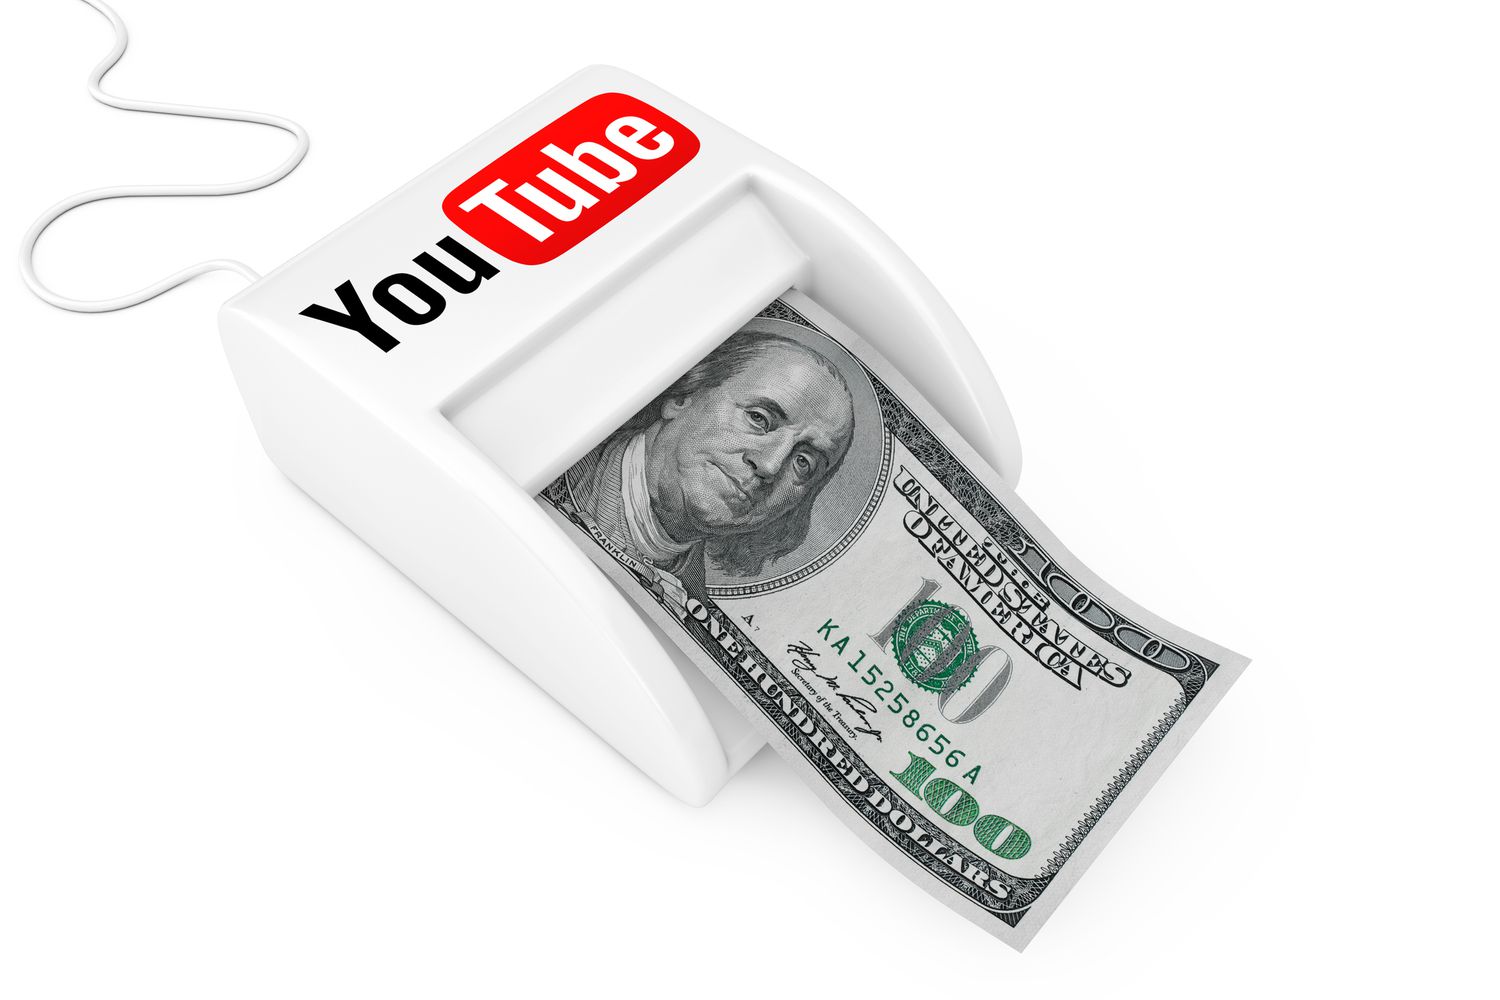 "Como Ganhar Dinheiro Vendo Vídeos no YouTube: Guia Completo para Incrementar sua Renda Online"